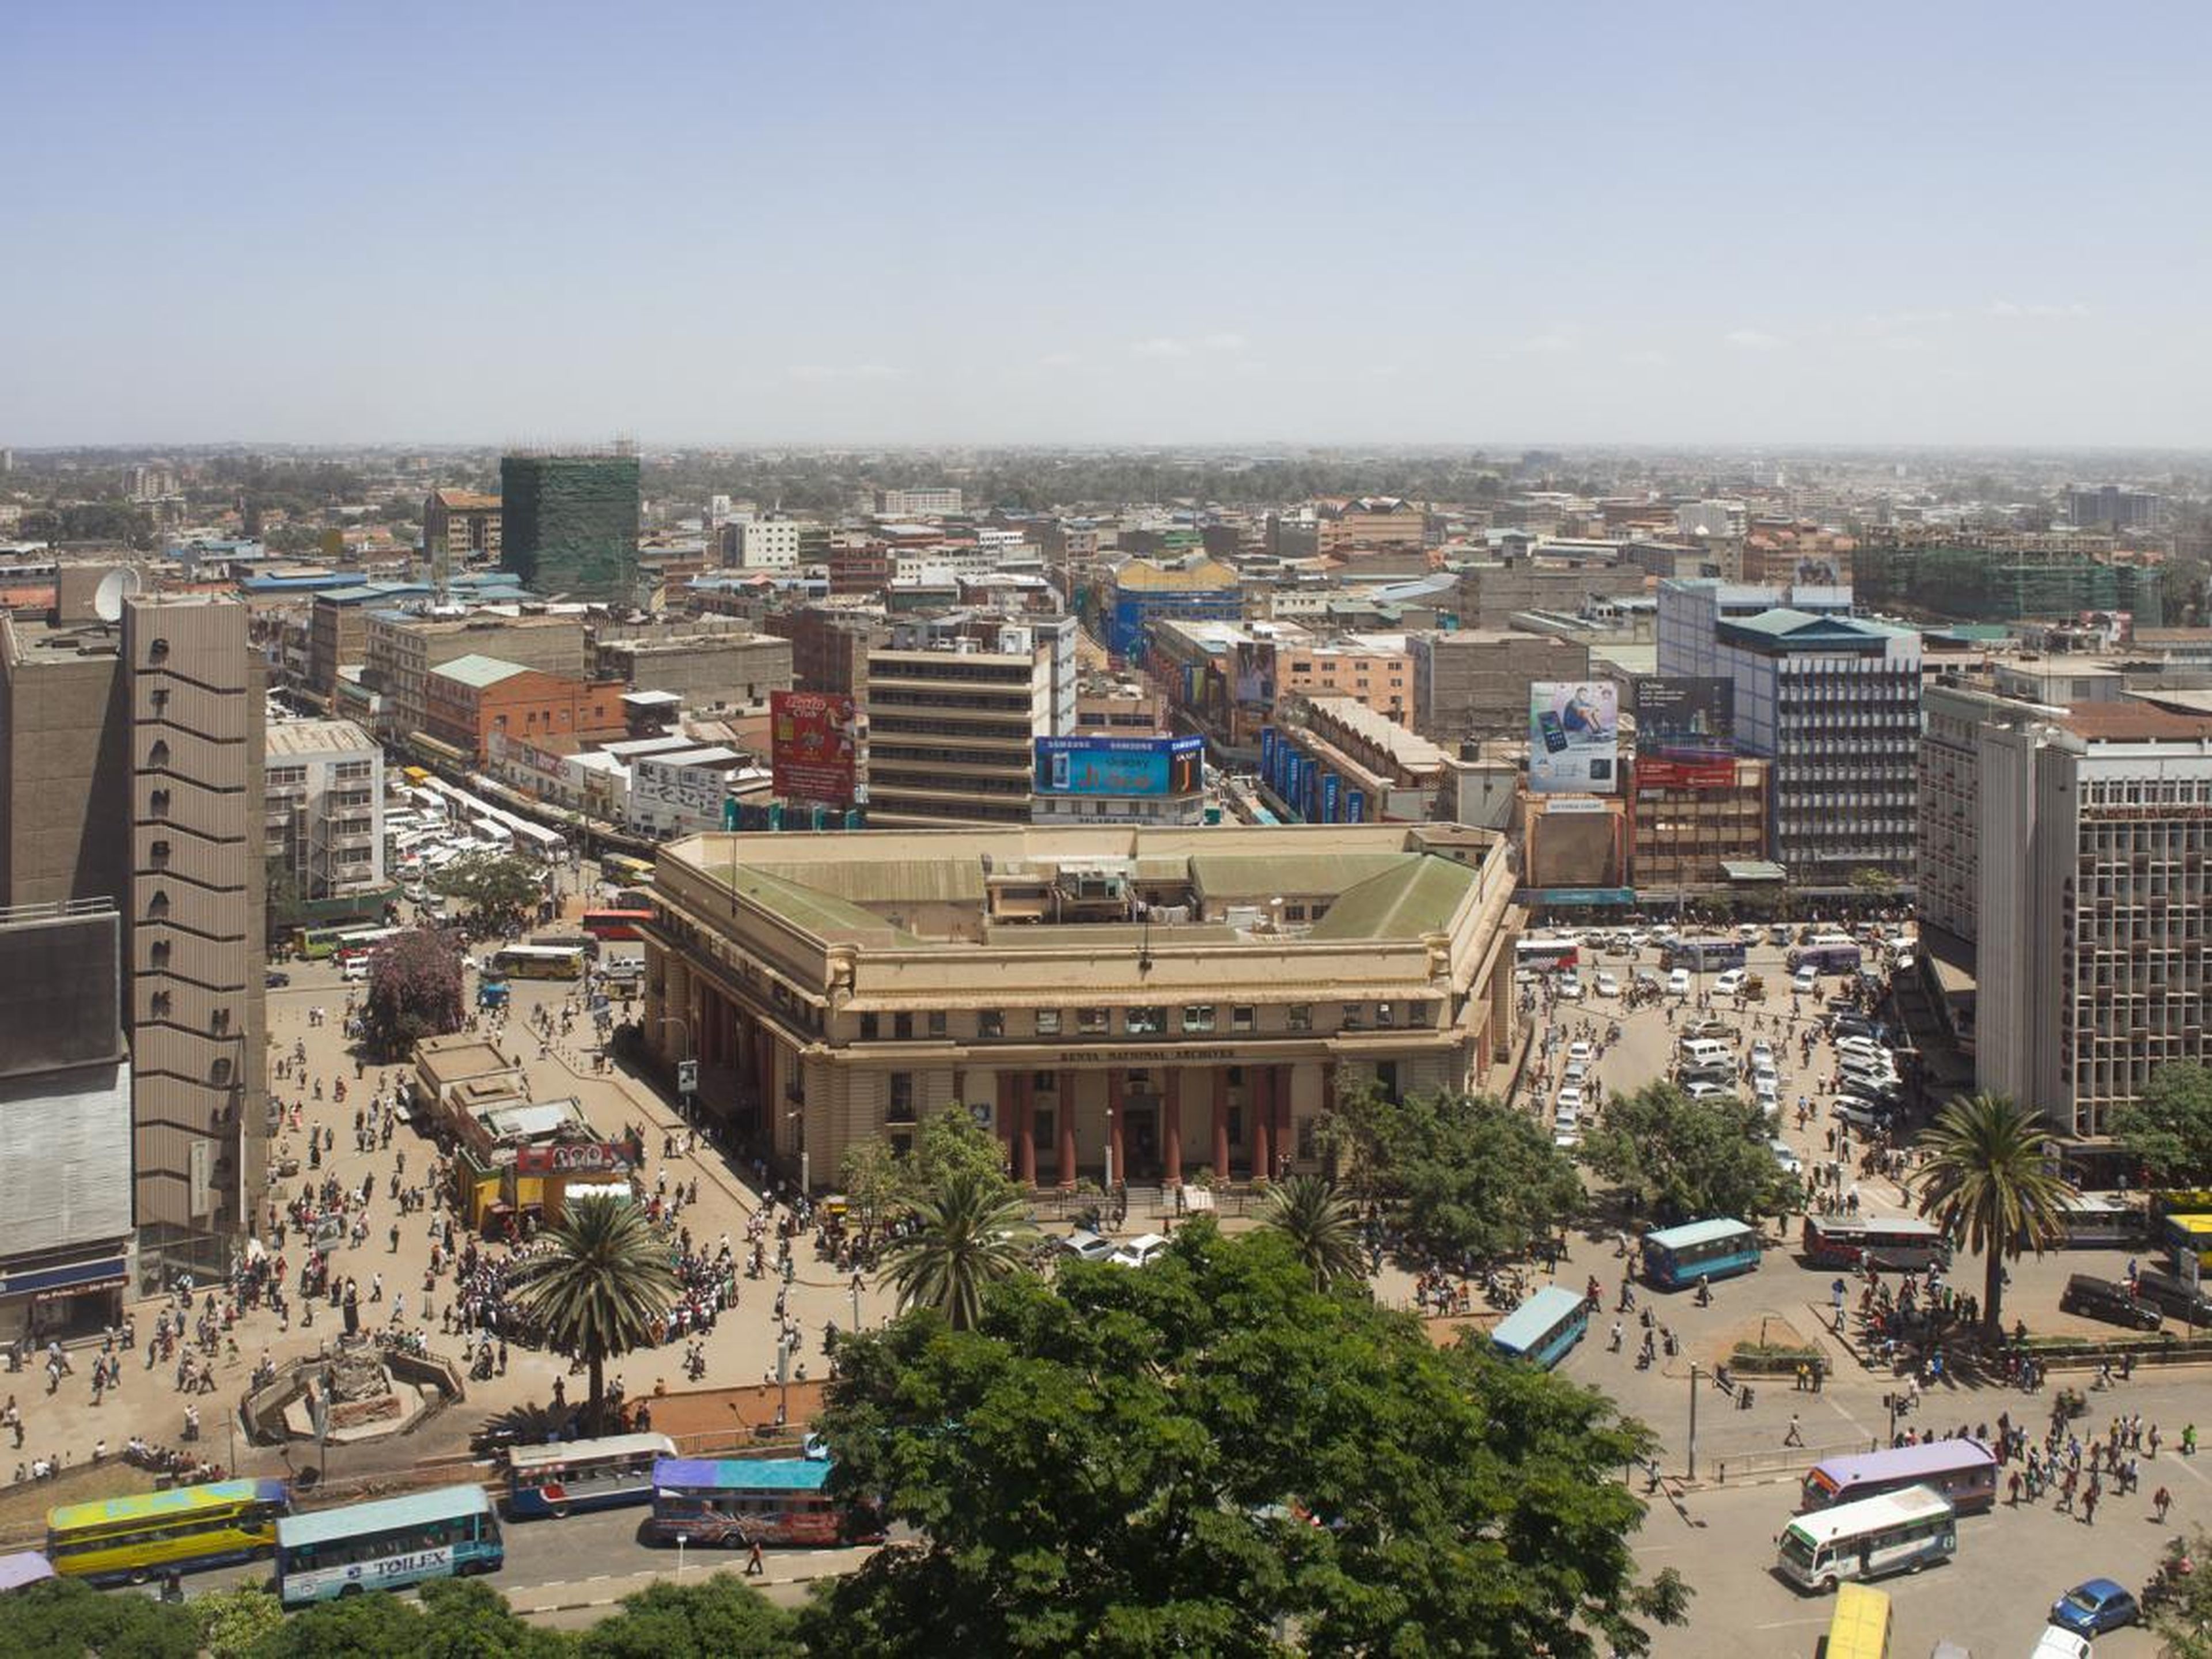 View of Nairobi, Kenya from the hotel window.